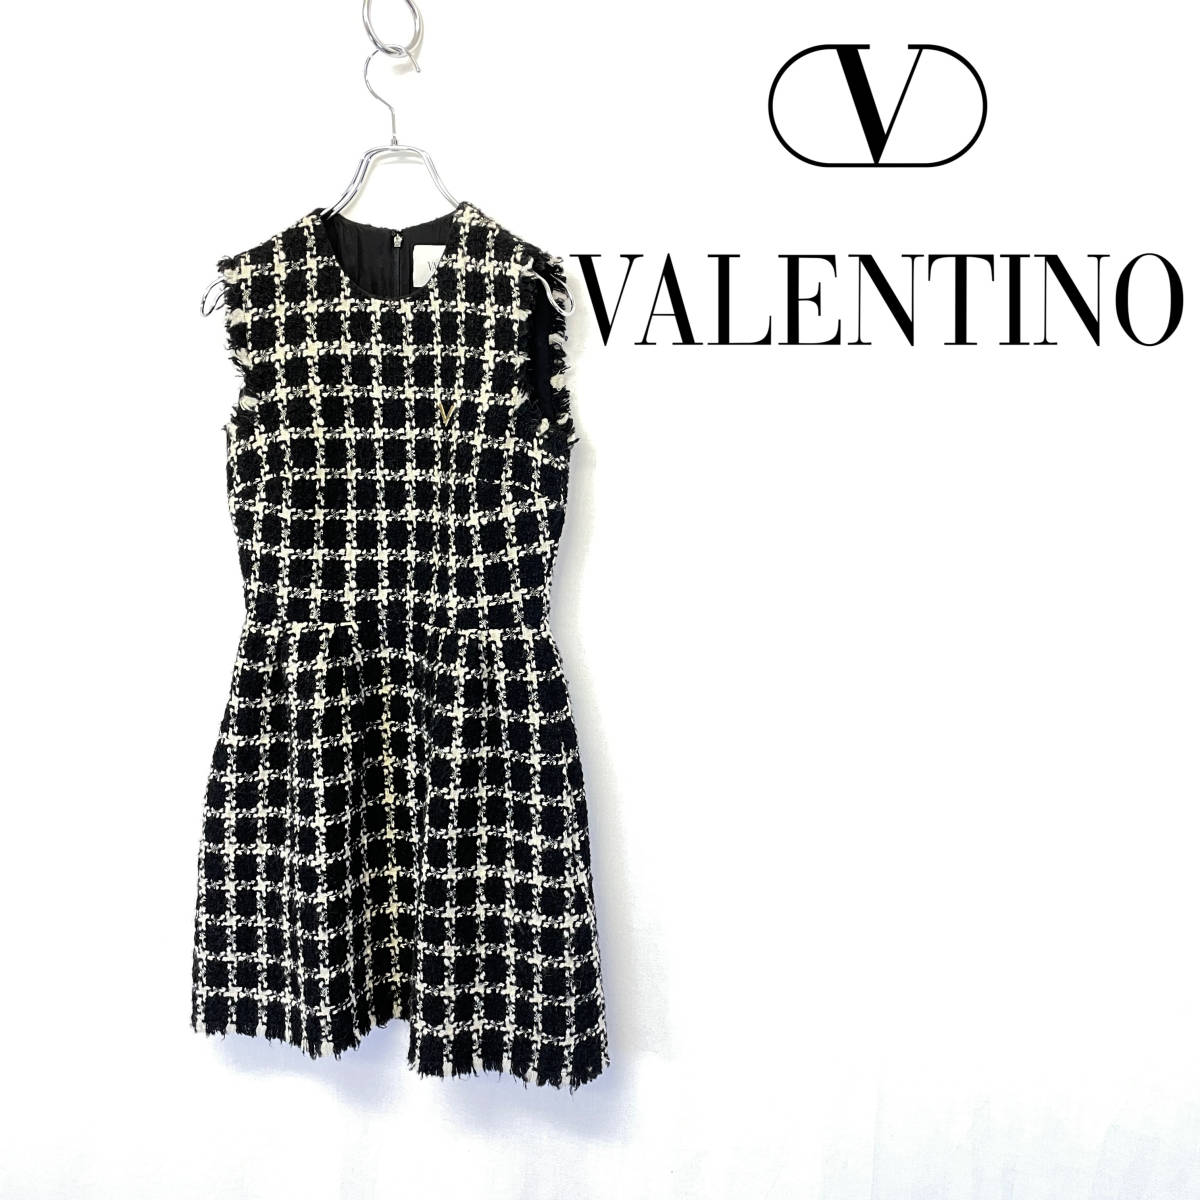 VALENTINO ヴァレンティノ Vロゴ ツイード オーバーチェック ワンピース size 38 【定価301,900 円】